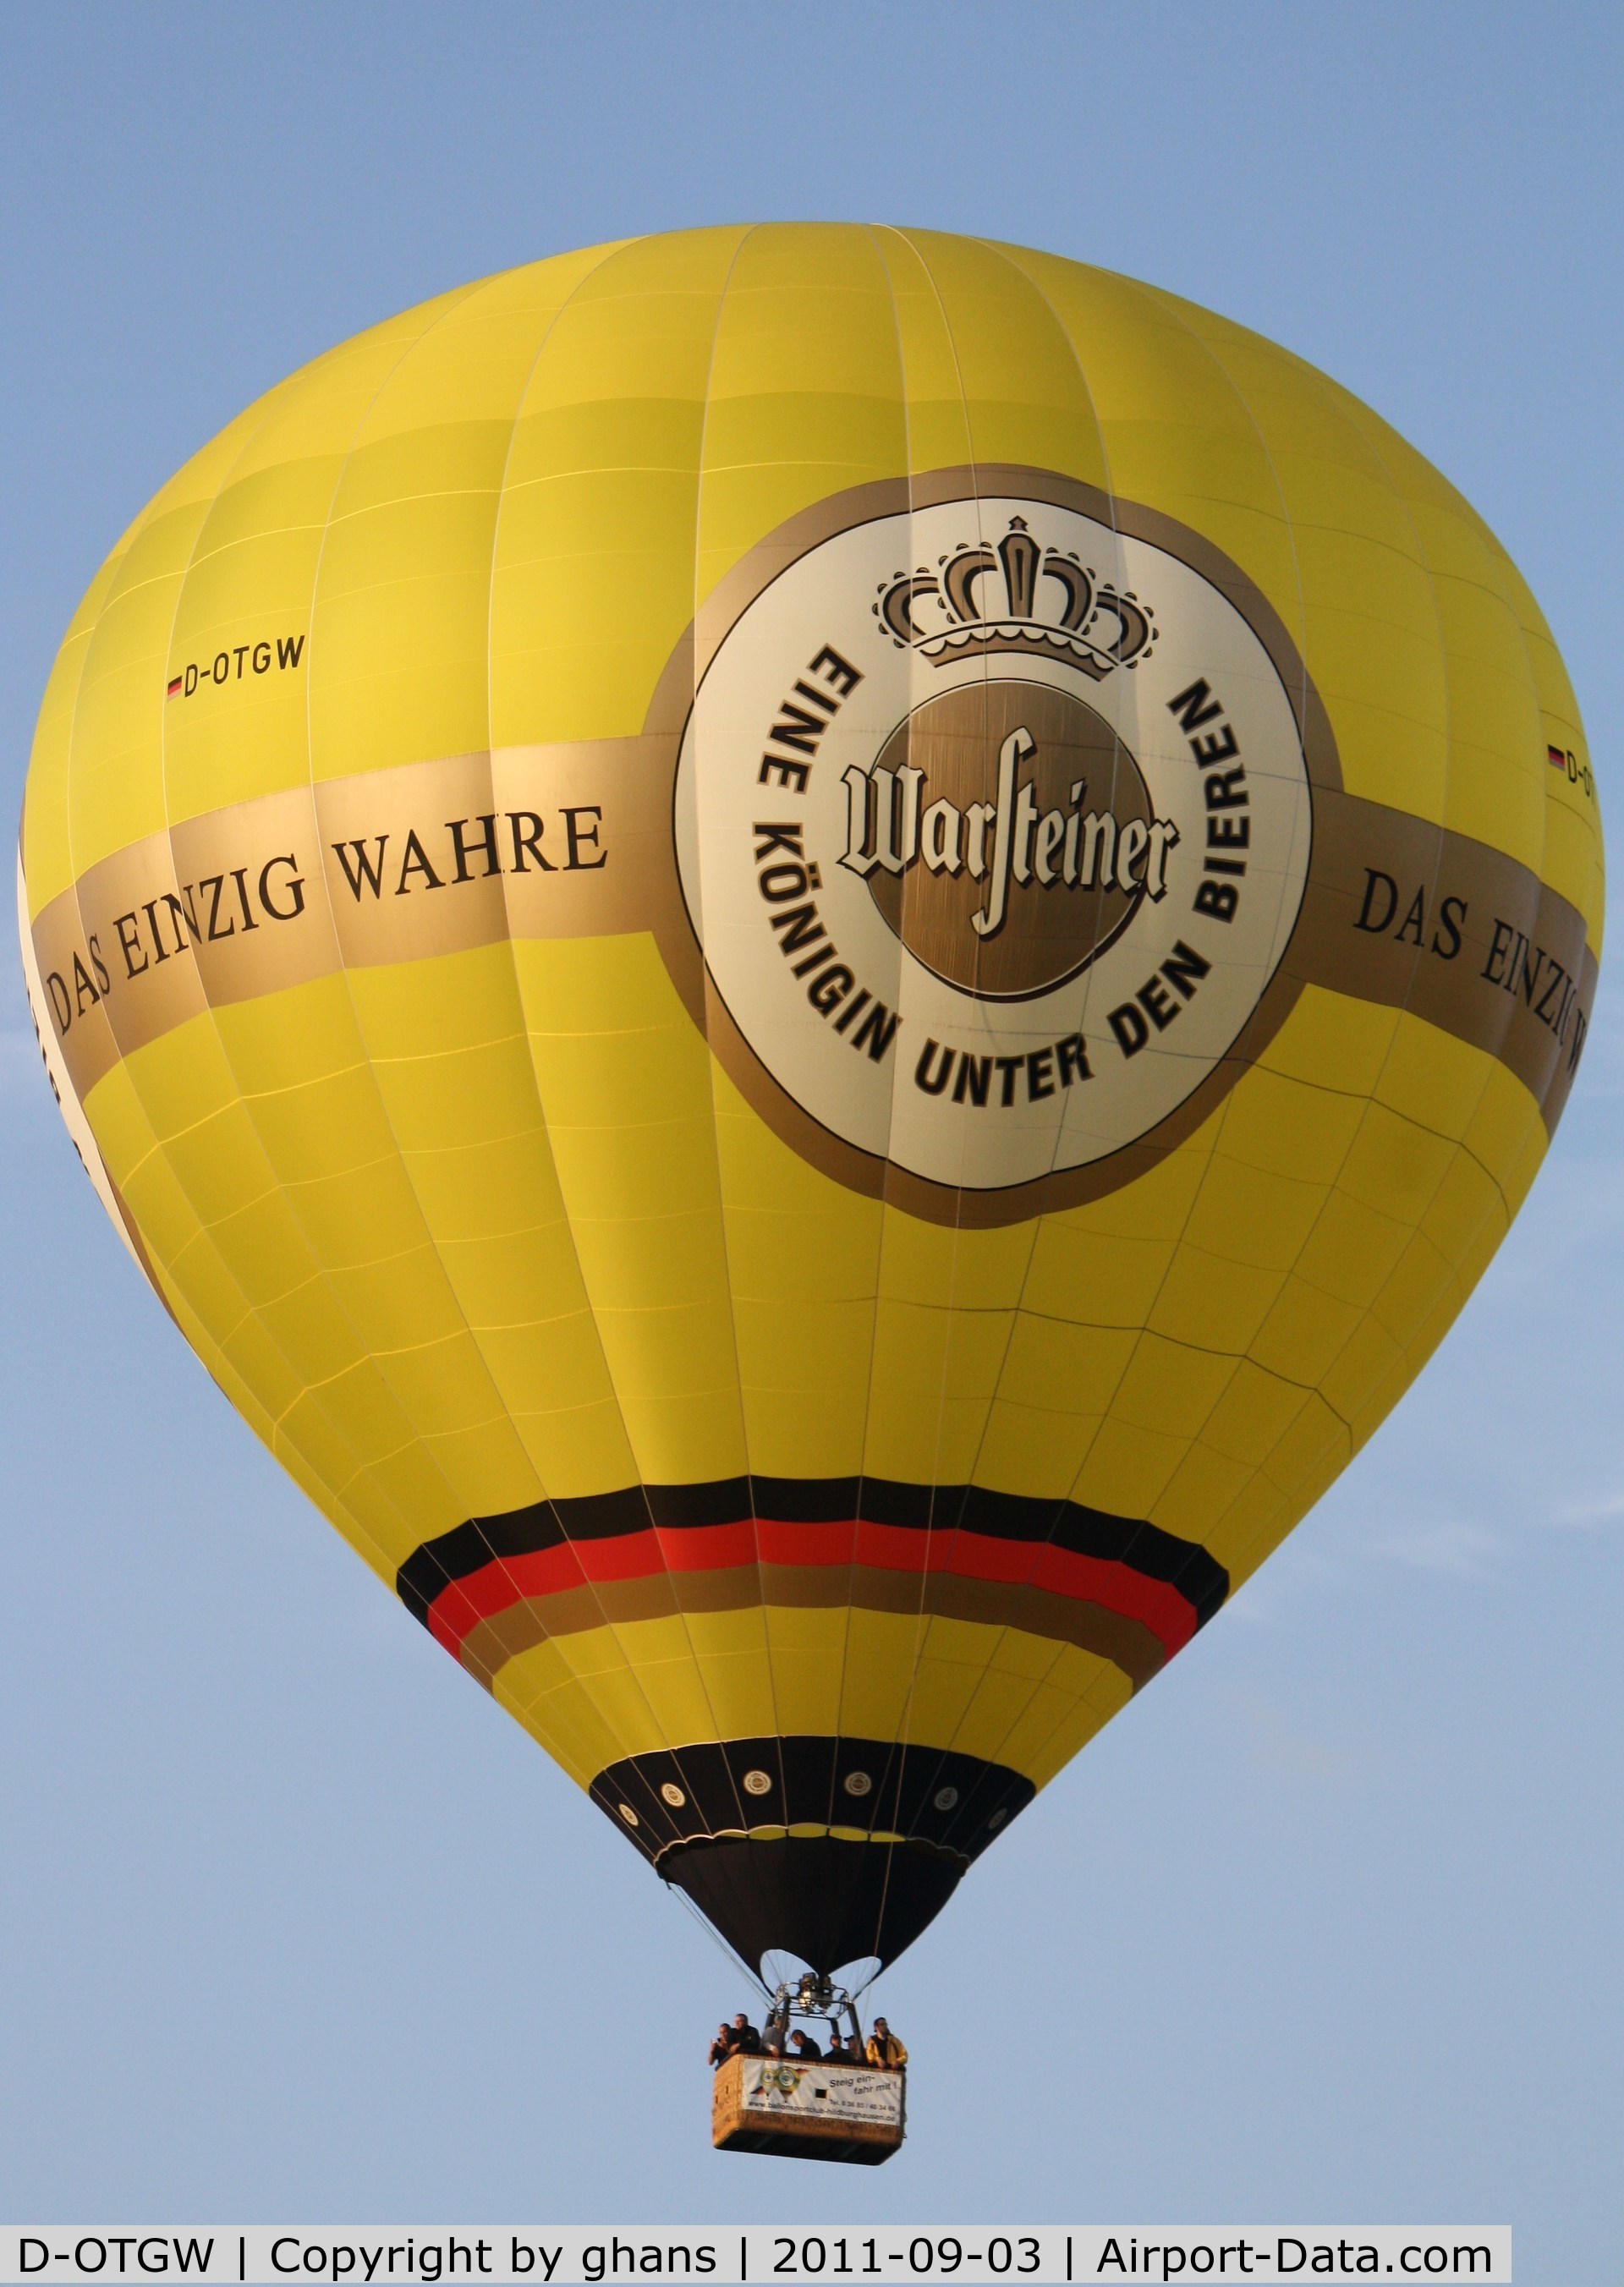 D-OTGW, 2010 Schroeder Fire Balloons G70/24 C/N 1404, WIM 2011
Warsteiner